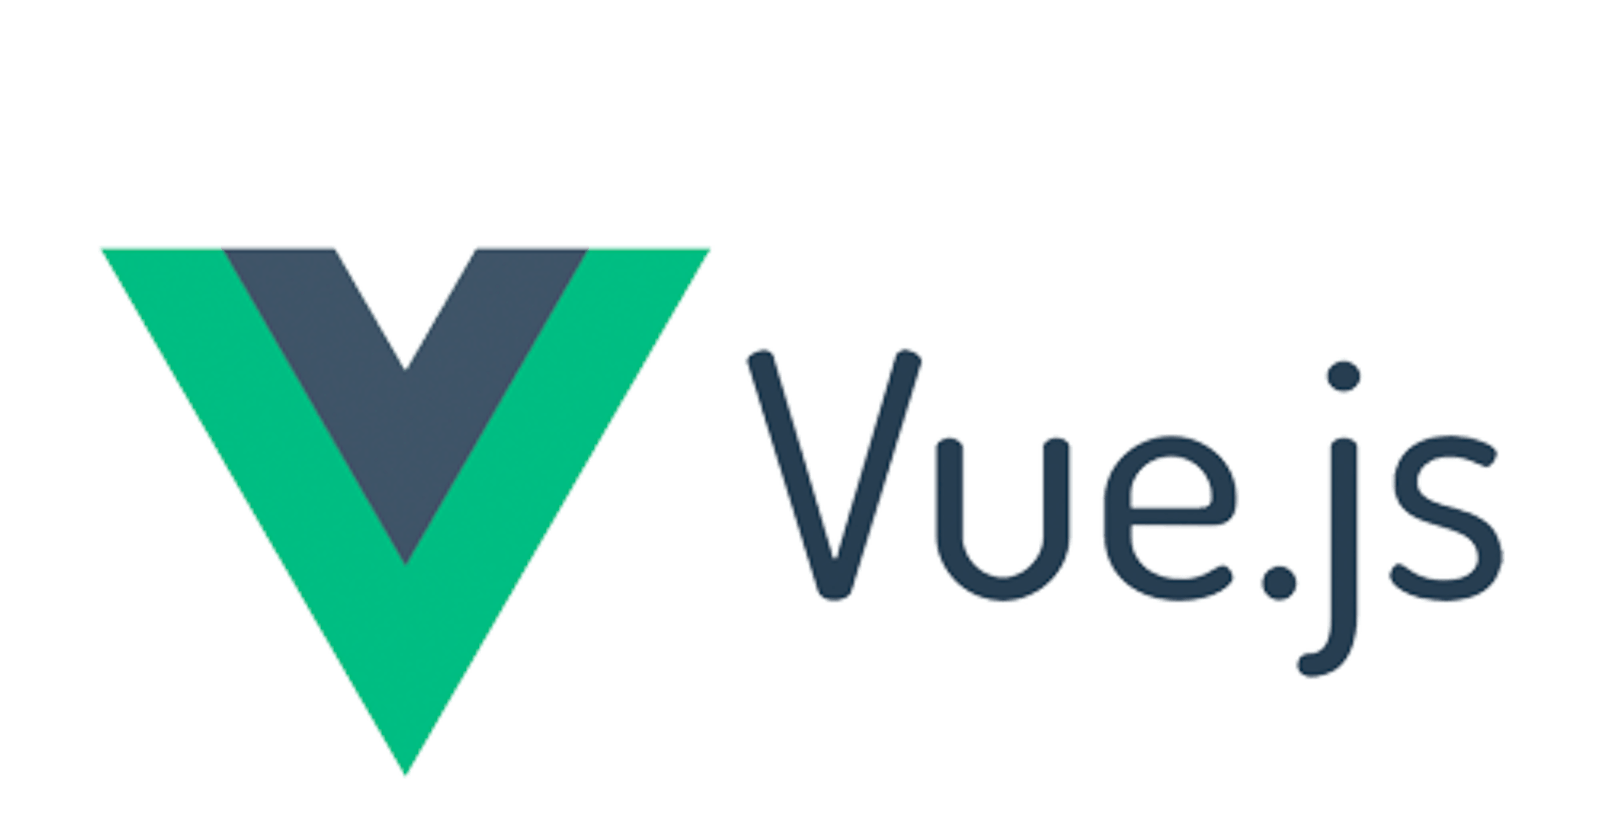 VueJS part 6: Components introduction